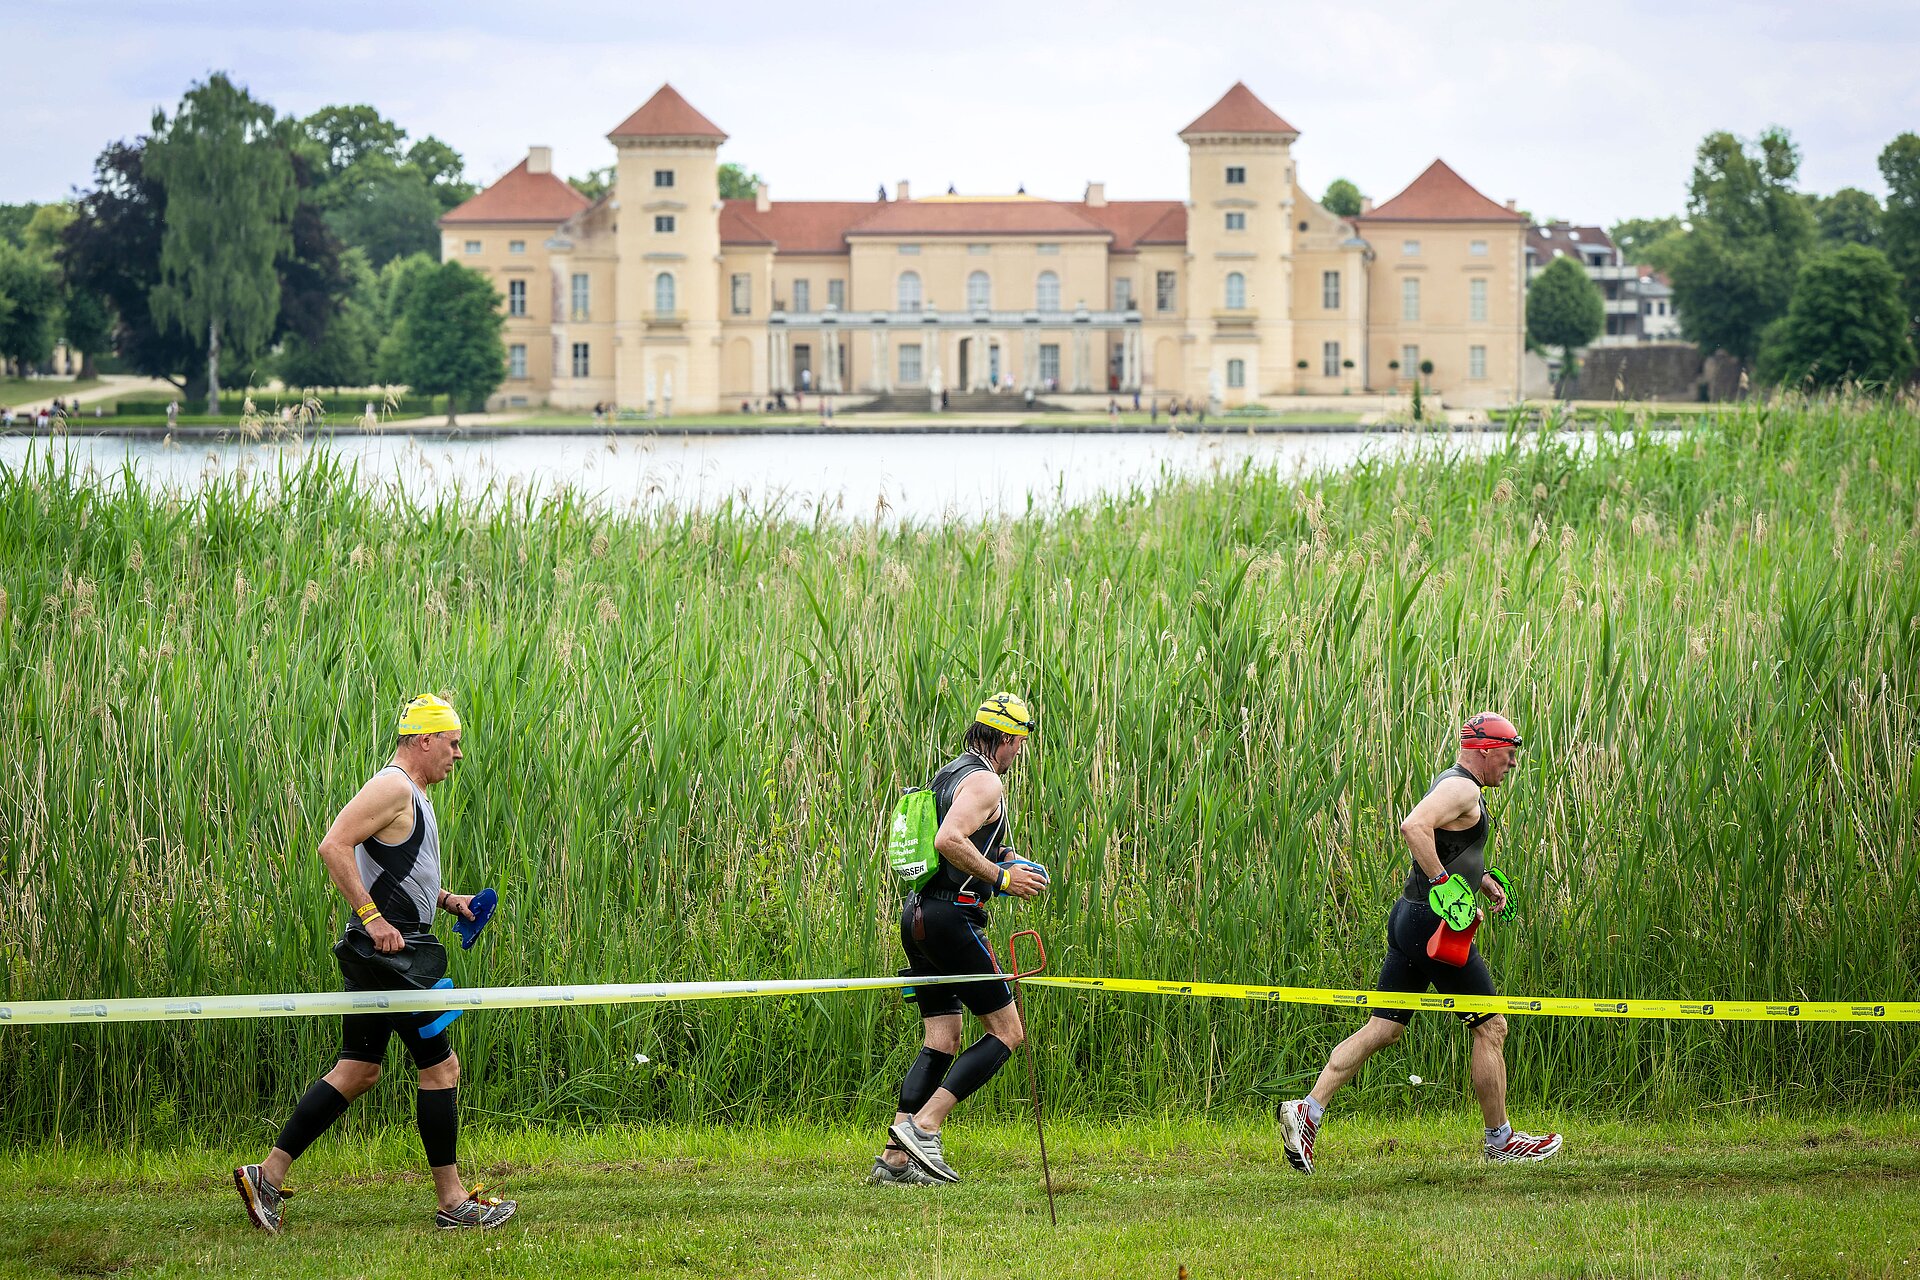 SwimRun: Drei Teilnehmer laufen am See entlang, Schloss Rheinsberg im Hintergrund © SCC EVENTS / Tilo Wiedensohler